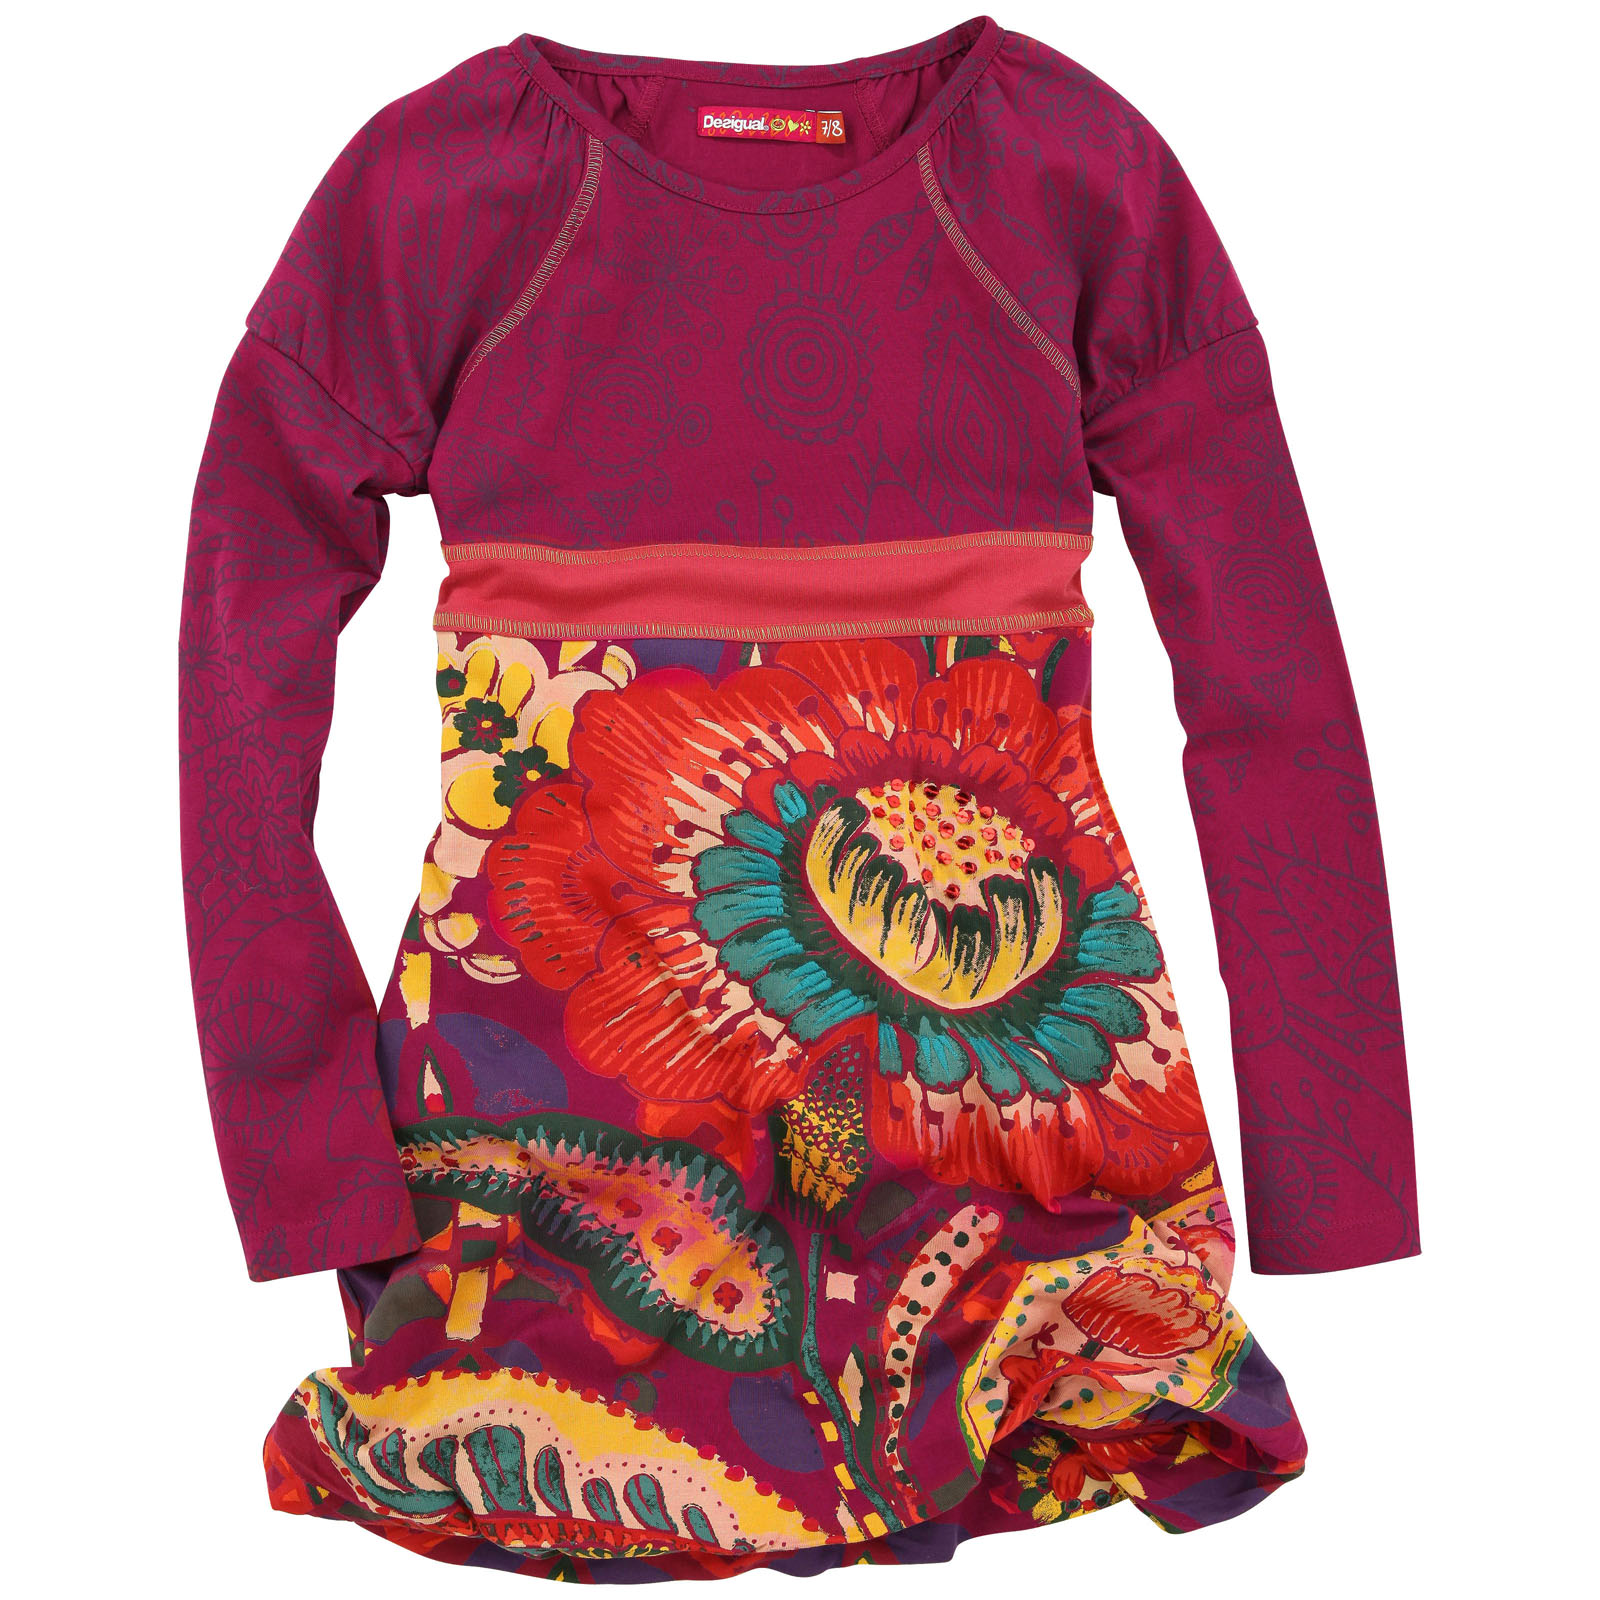 Soldes Robe Fille Melijoe - Desigual Robe en jersey multicolore